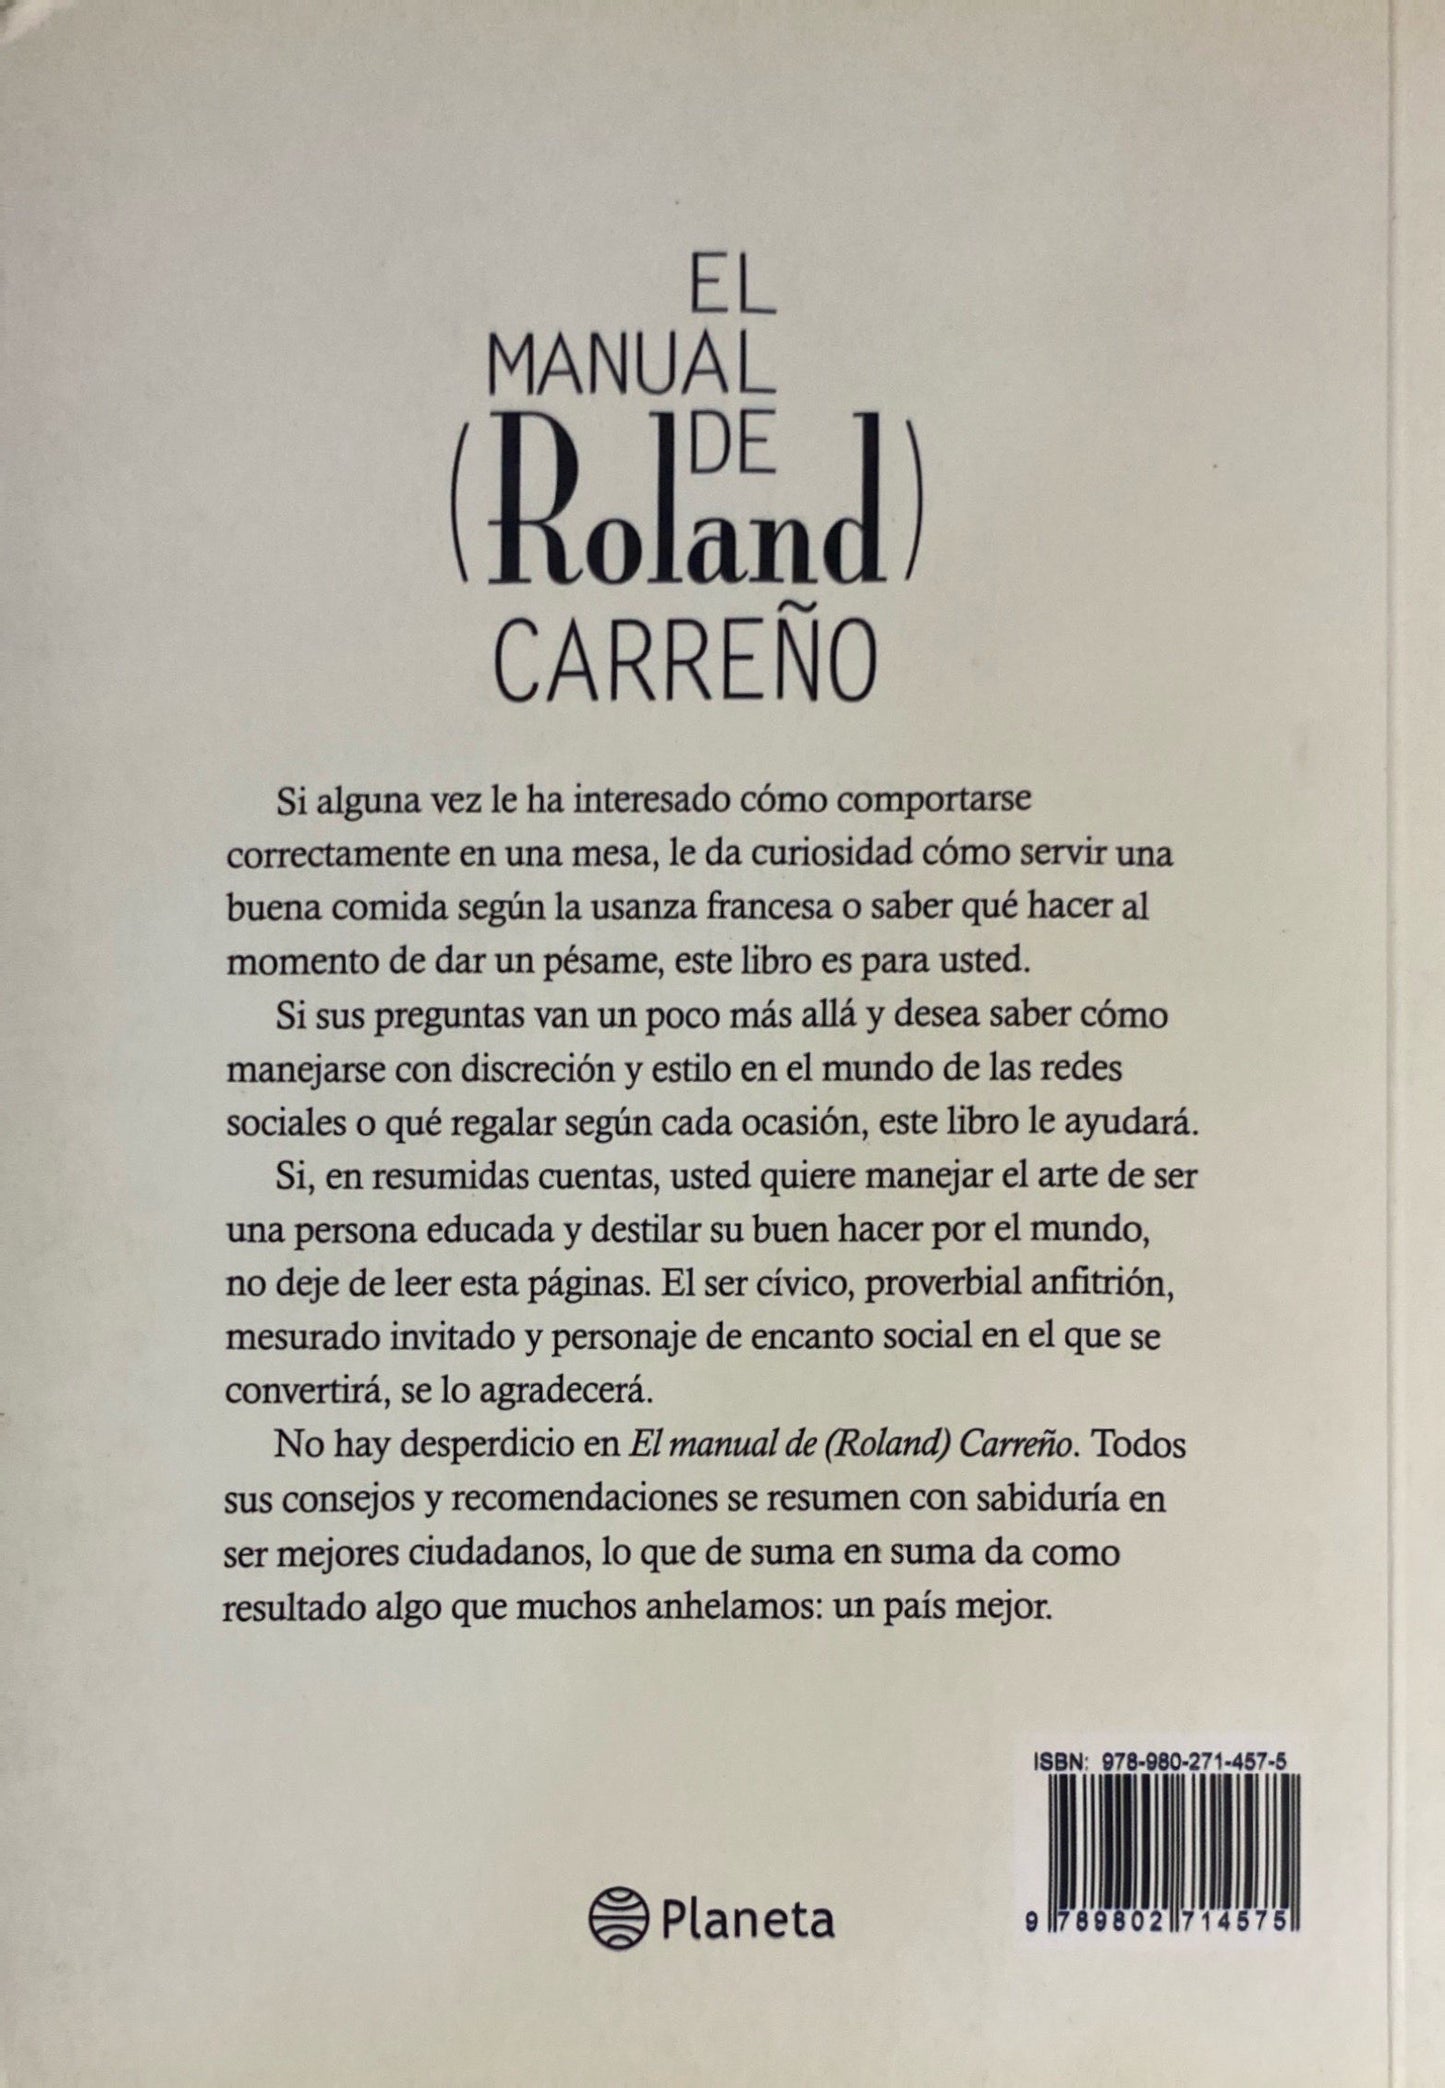 El manual de Roland Carreño